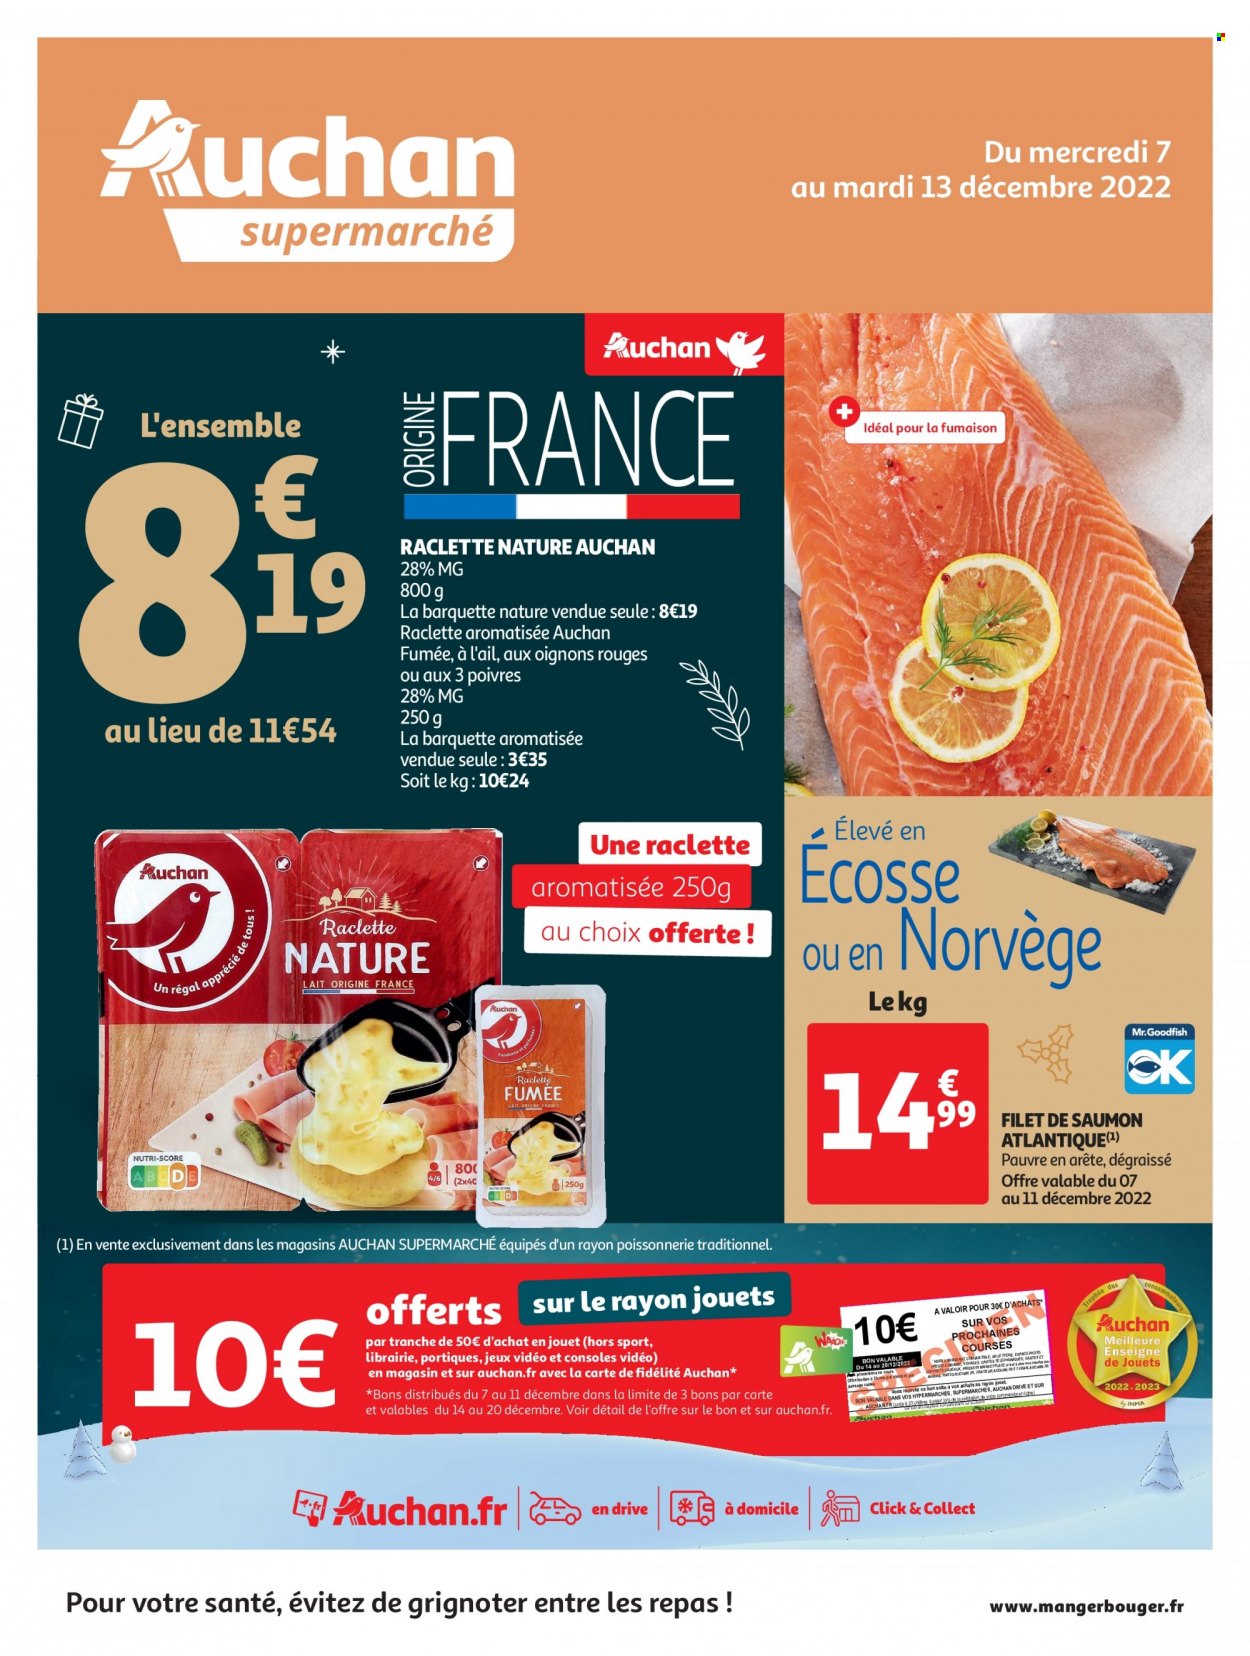 thumbnail - Catalogue Auchan - 07/12/2022 - 13/12/2022 - Produits soldés - saumon, pavés de saumon, fromage à raclette, La Raclette, console. Page 1.